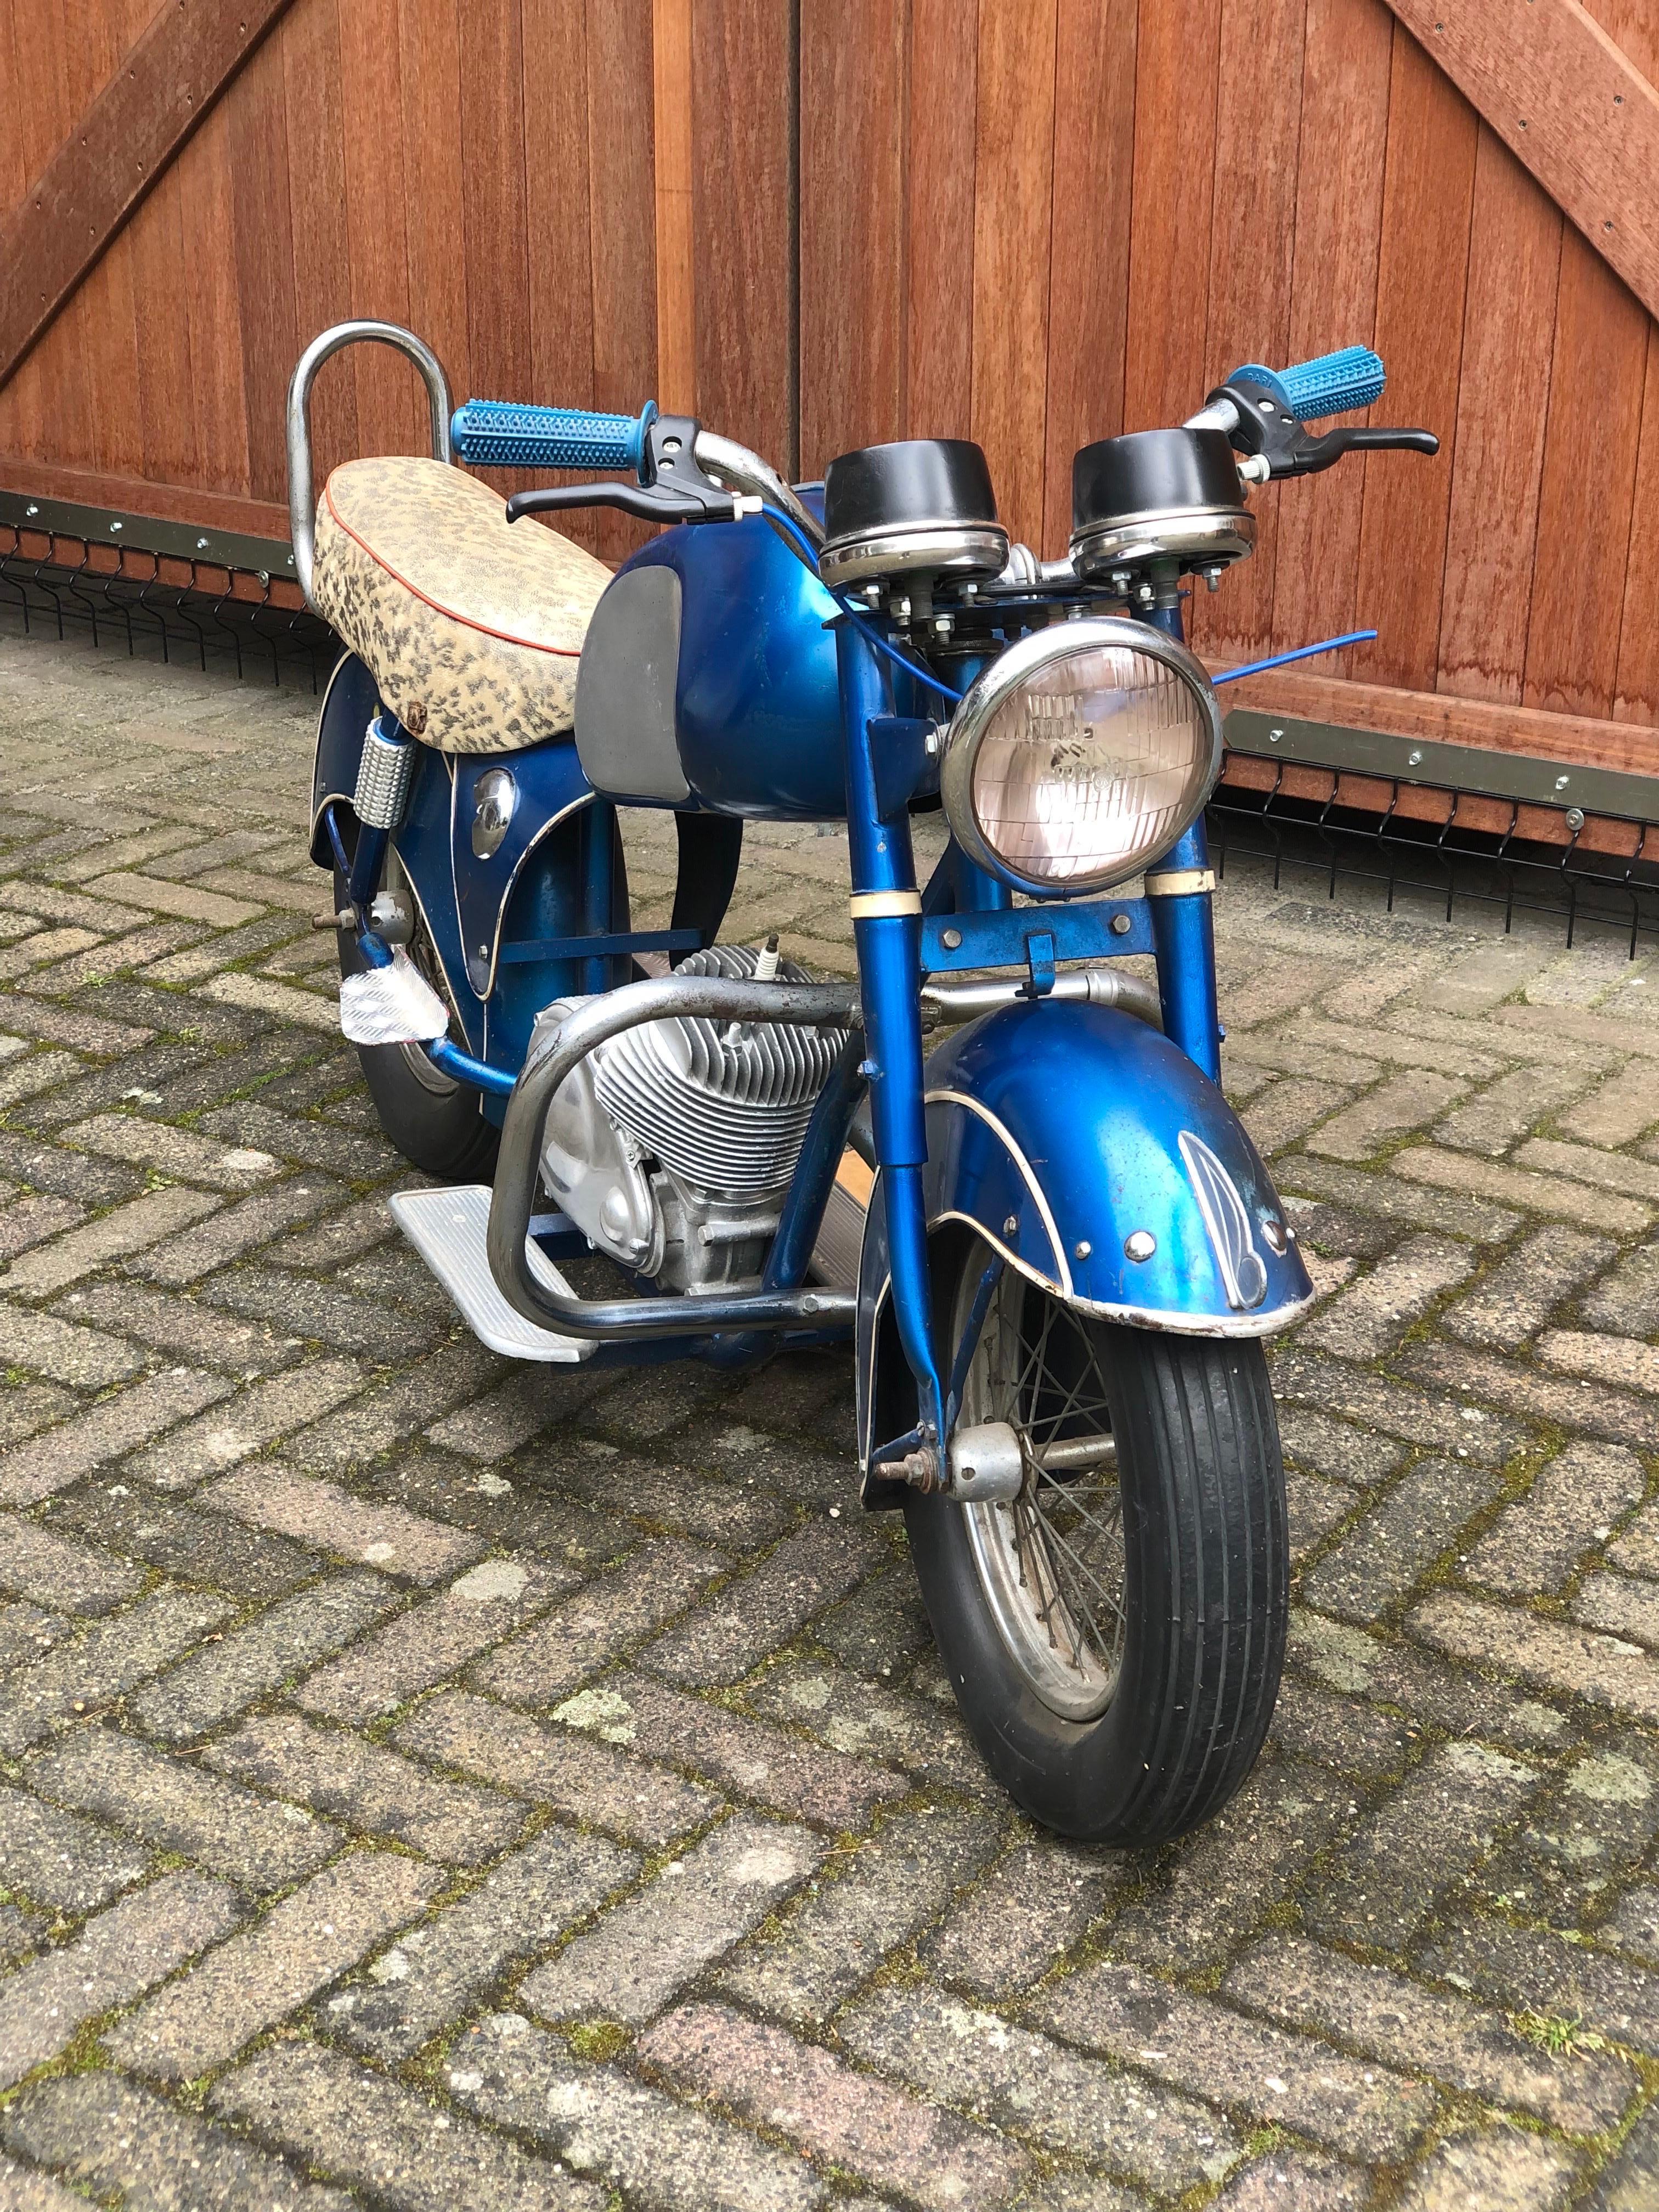 Karussell-Motorrad - Motorrad - Motorrad von Fonlupt Frankreich. 
Ein französisches Vintage-Kindermotorrad, das auf dem Karussell - Karussell - Jahrmarkt - Kirmes - verwendet wird. 
Ein Metall-Rennwagenmodell aus den 1950er Jahren - Cafe Racer für